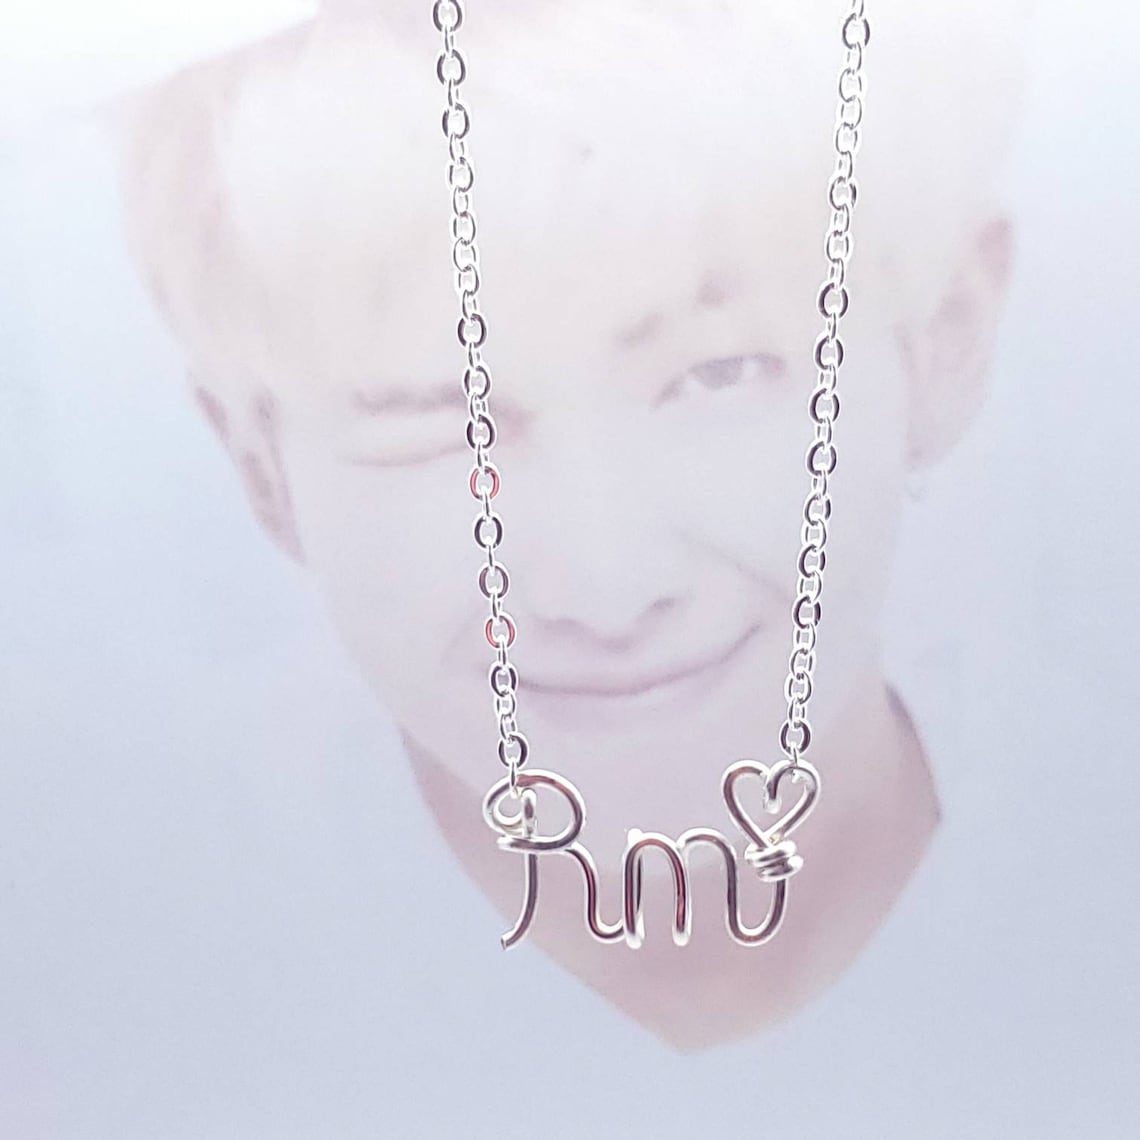 Rm necklace Bangtan necklace Kpop necklace BTS BTS | Etsy